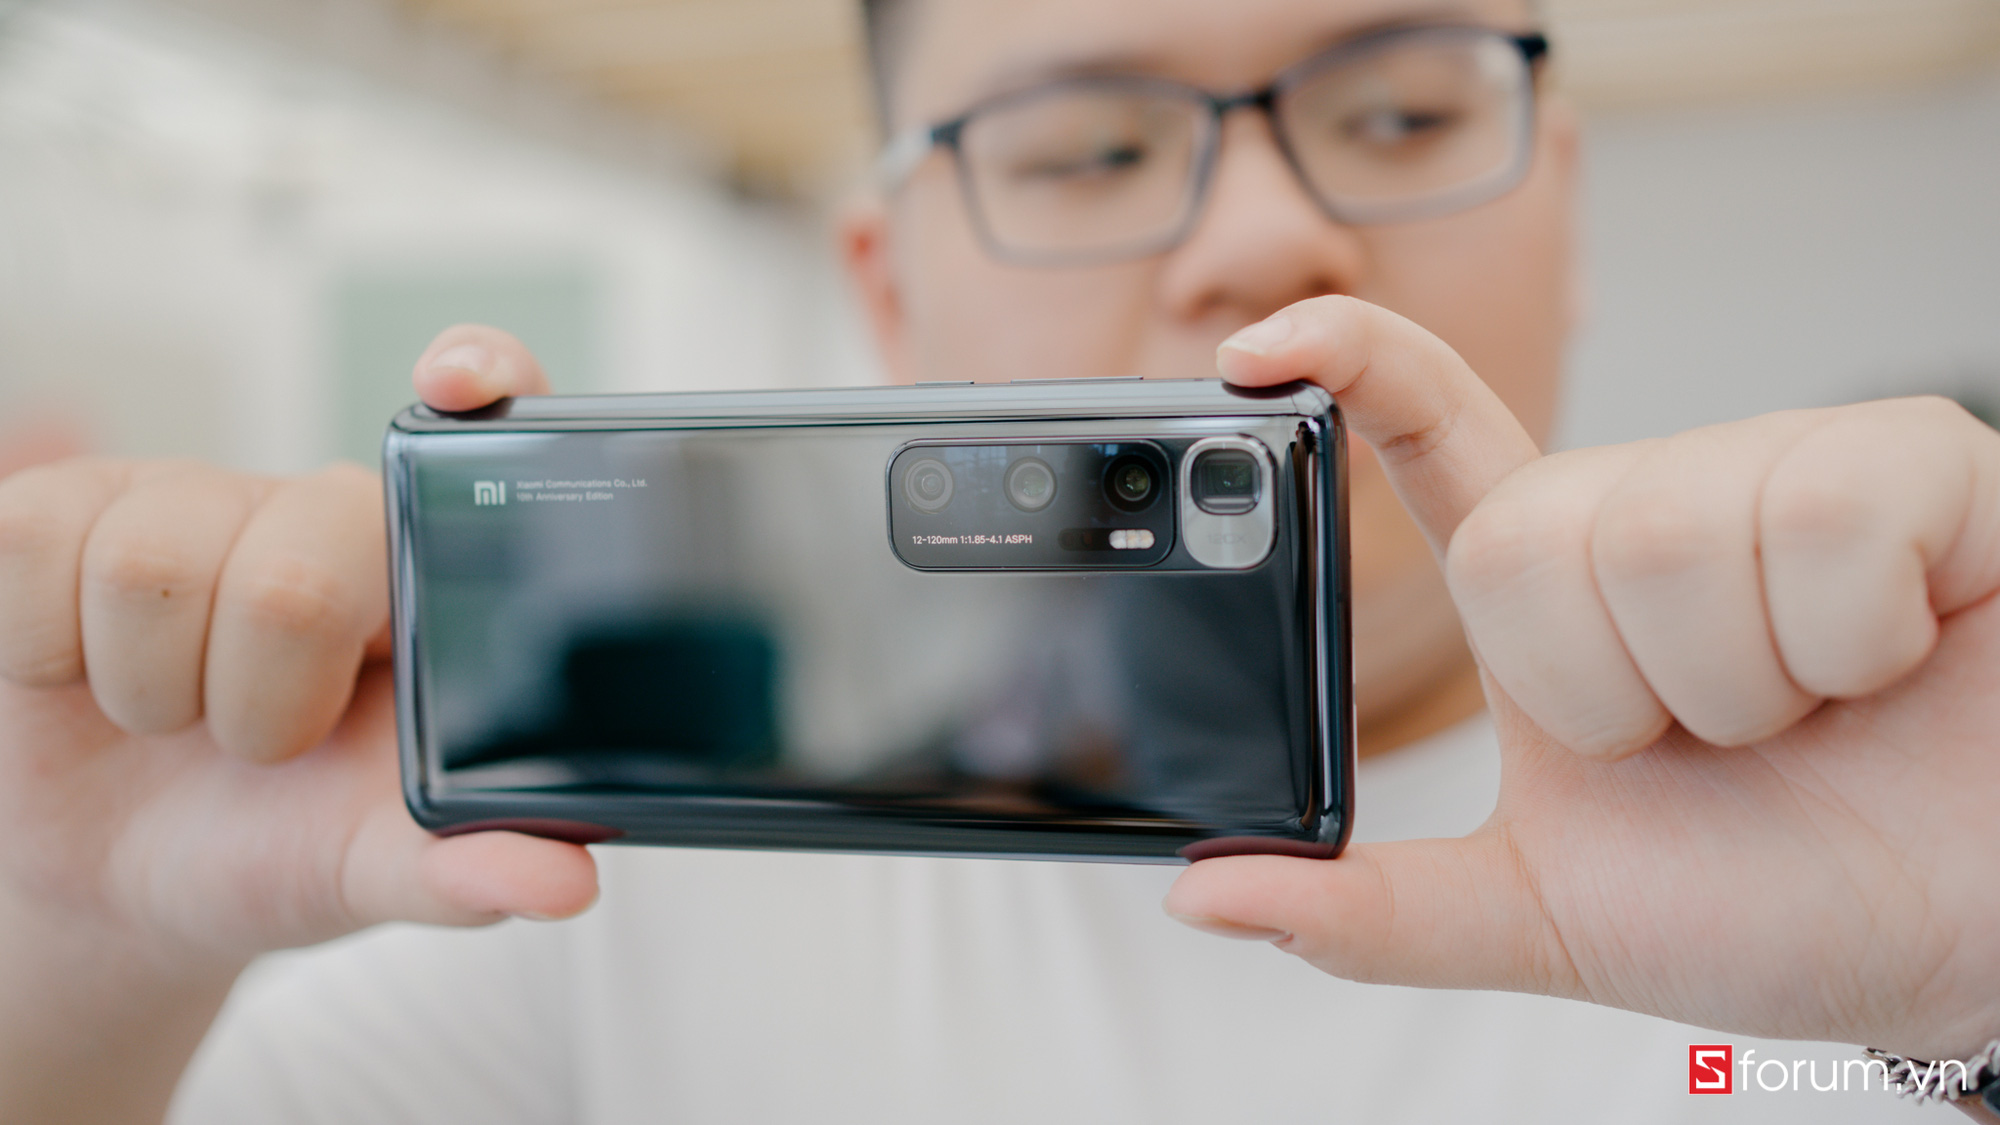 Điện thoại chụp ảnh đẹp nhất: Ngỡ ngàng iPhone và Samsung không có tên - Ảnh 2.